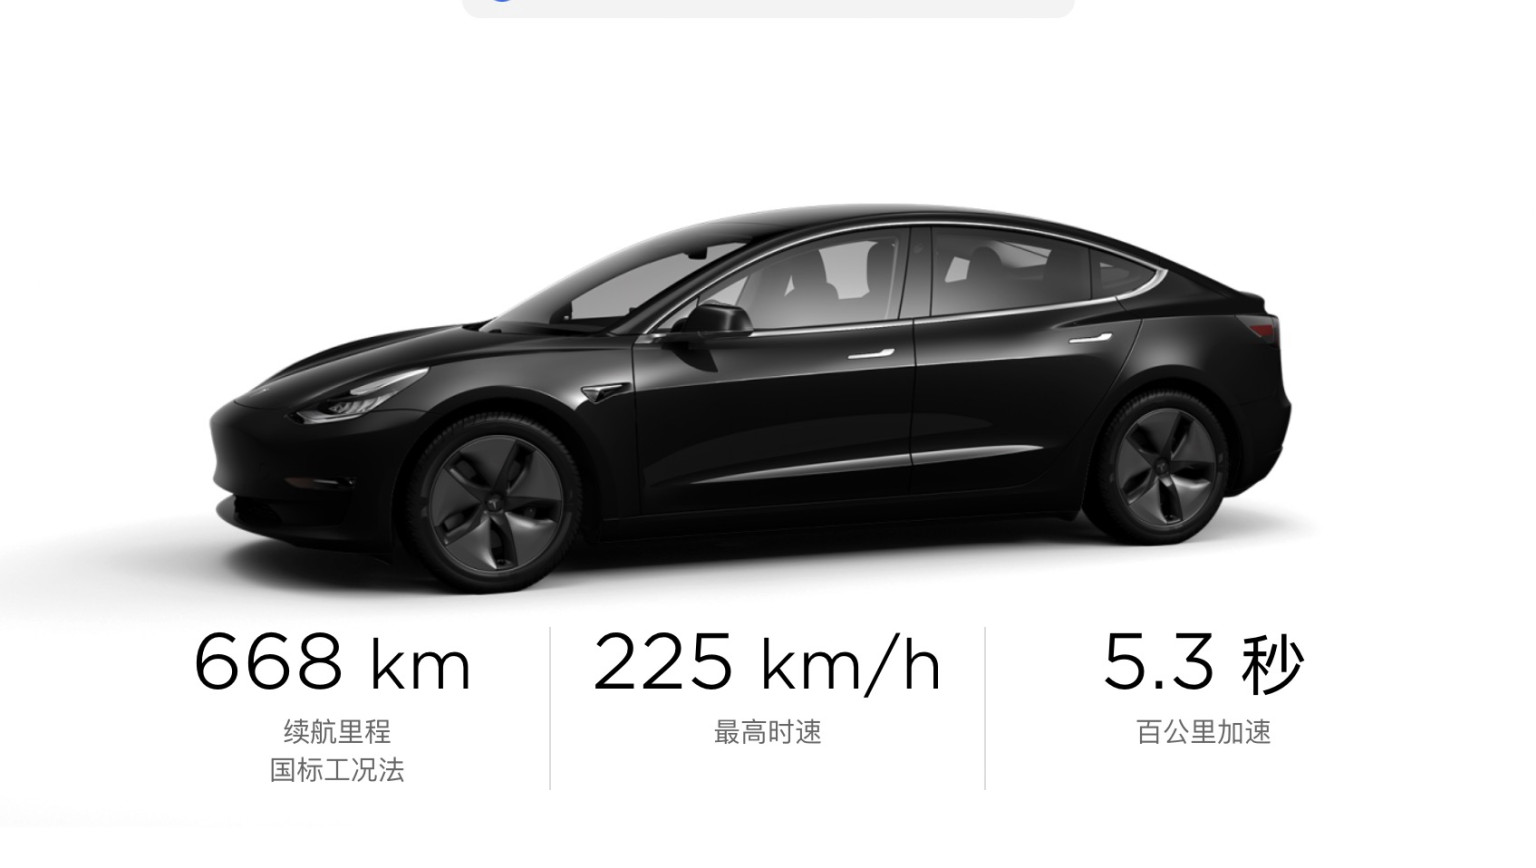 12. deutsches Tesla Model Y seit Ende März in Werkstatt >